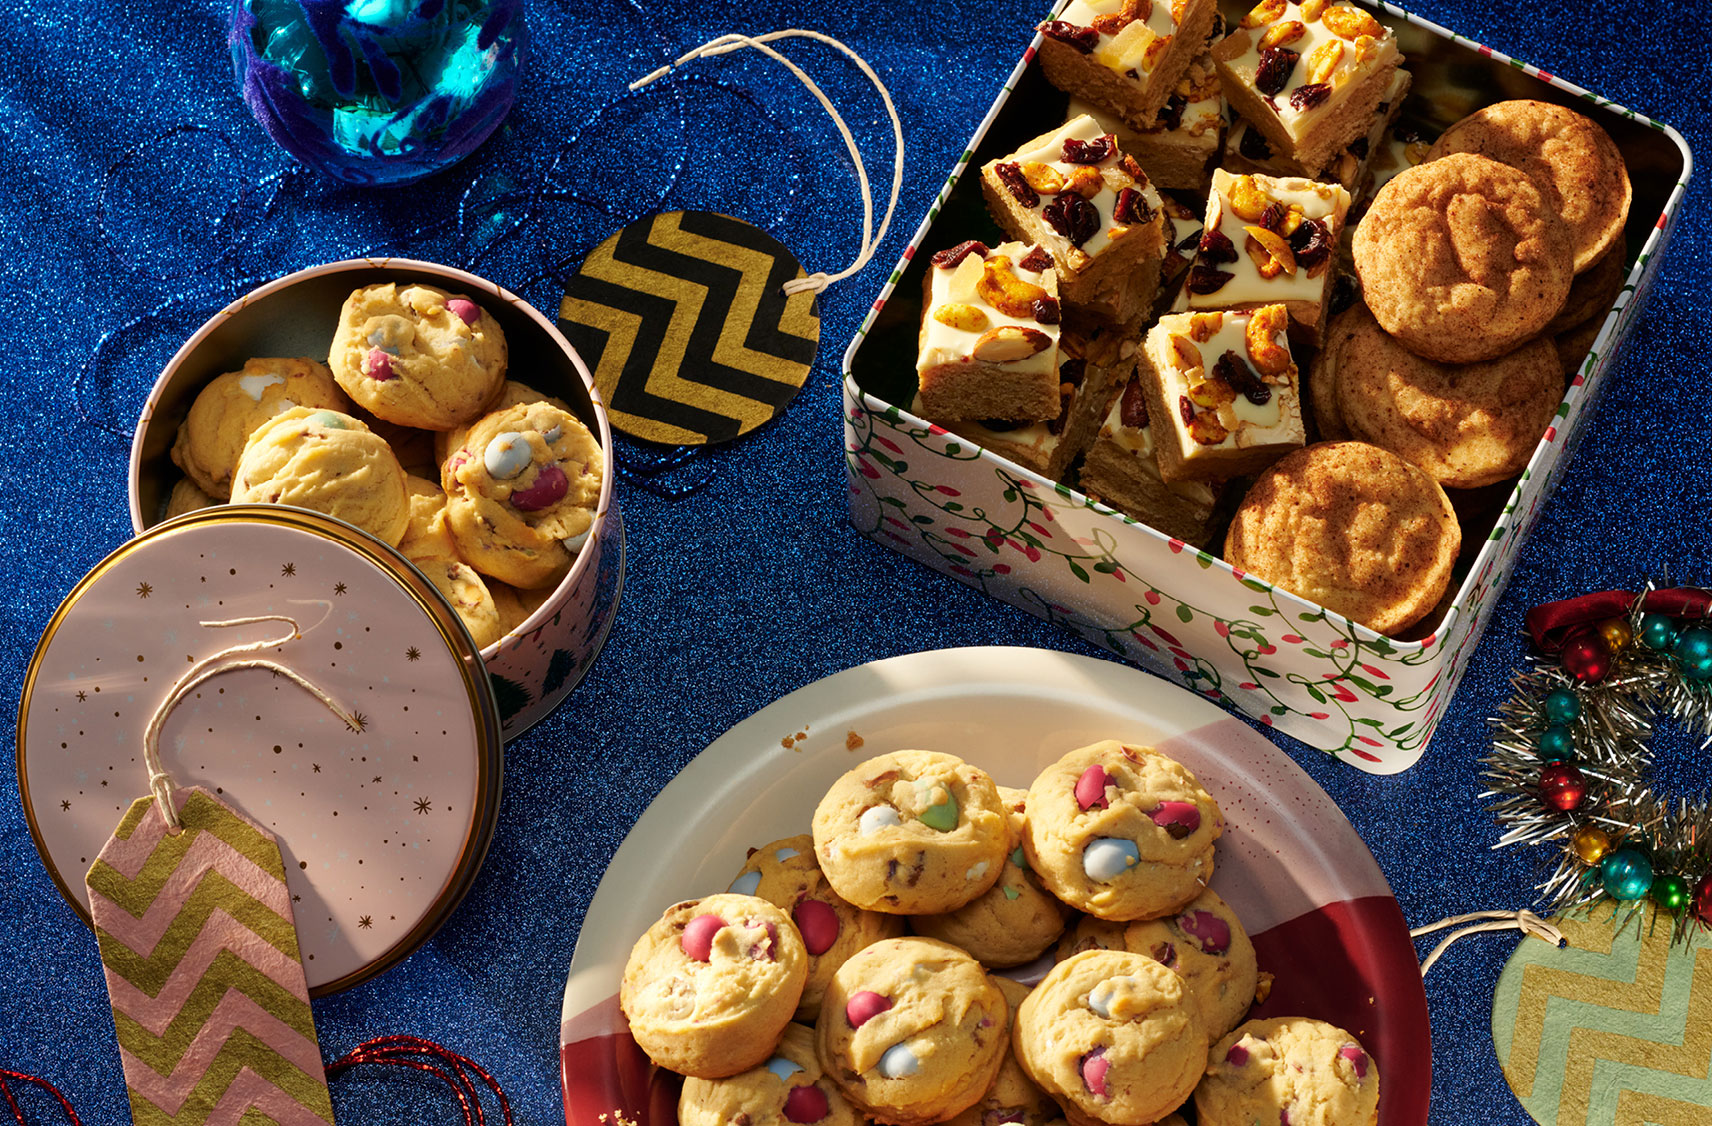 Une table remplie de boîtes de biscuits, dont des biscuits aux œufs en chocolat sur une assiette rouge et blanche à côté d'une boîte de snickerdoodles et de carrés garnis de cerises et de noix.